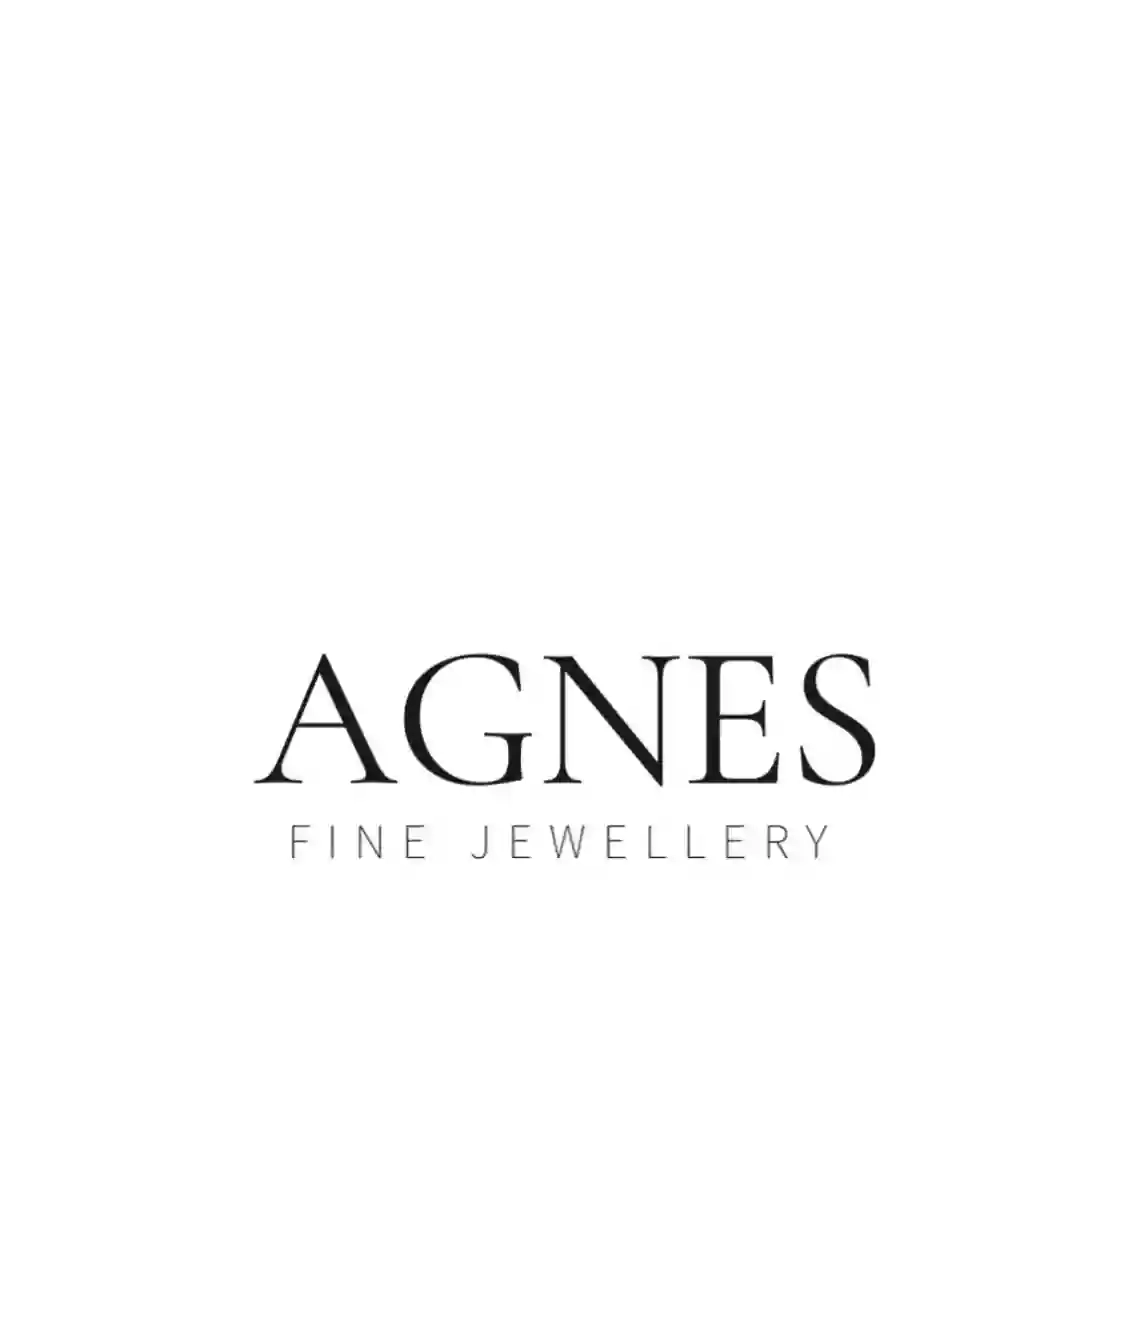 Agnes Fine Jewellery London